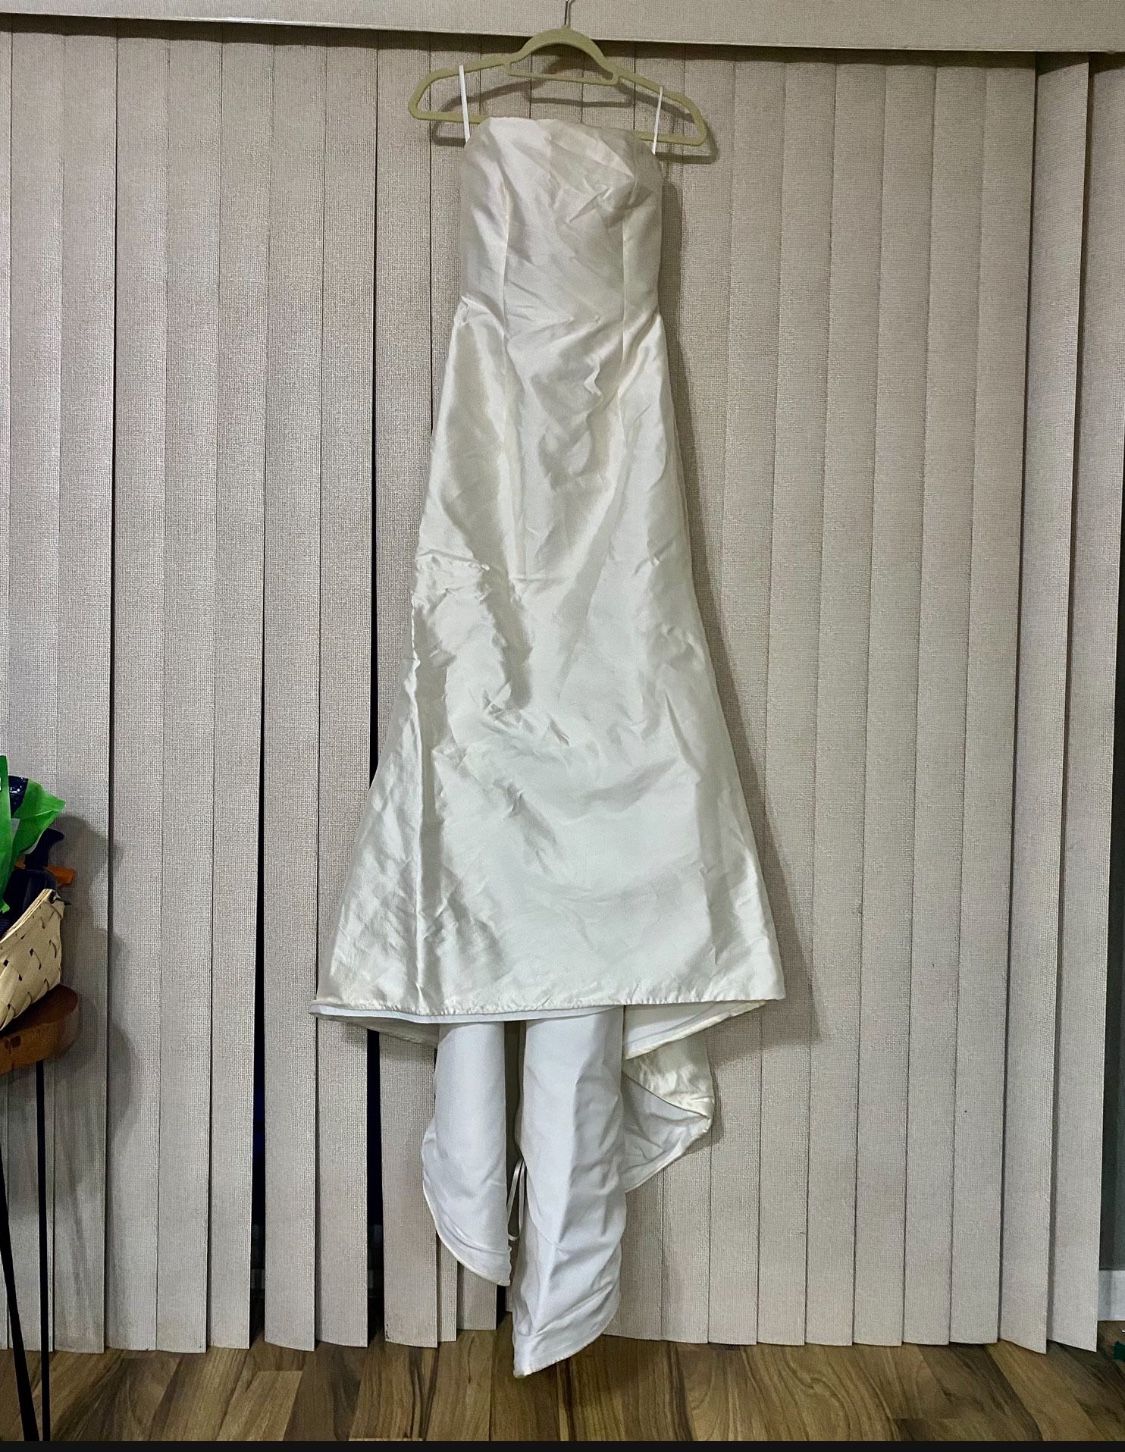 Romona Keveza Wedding Dress Size 10 With Train And Veil